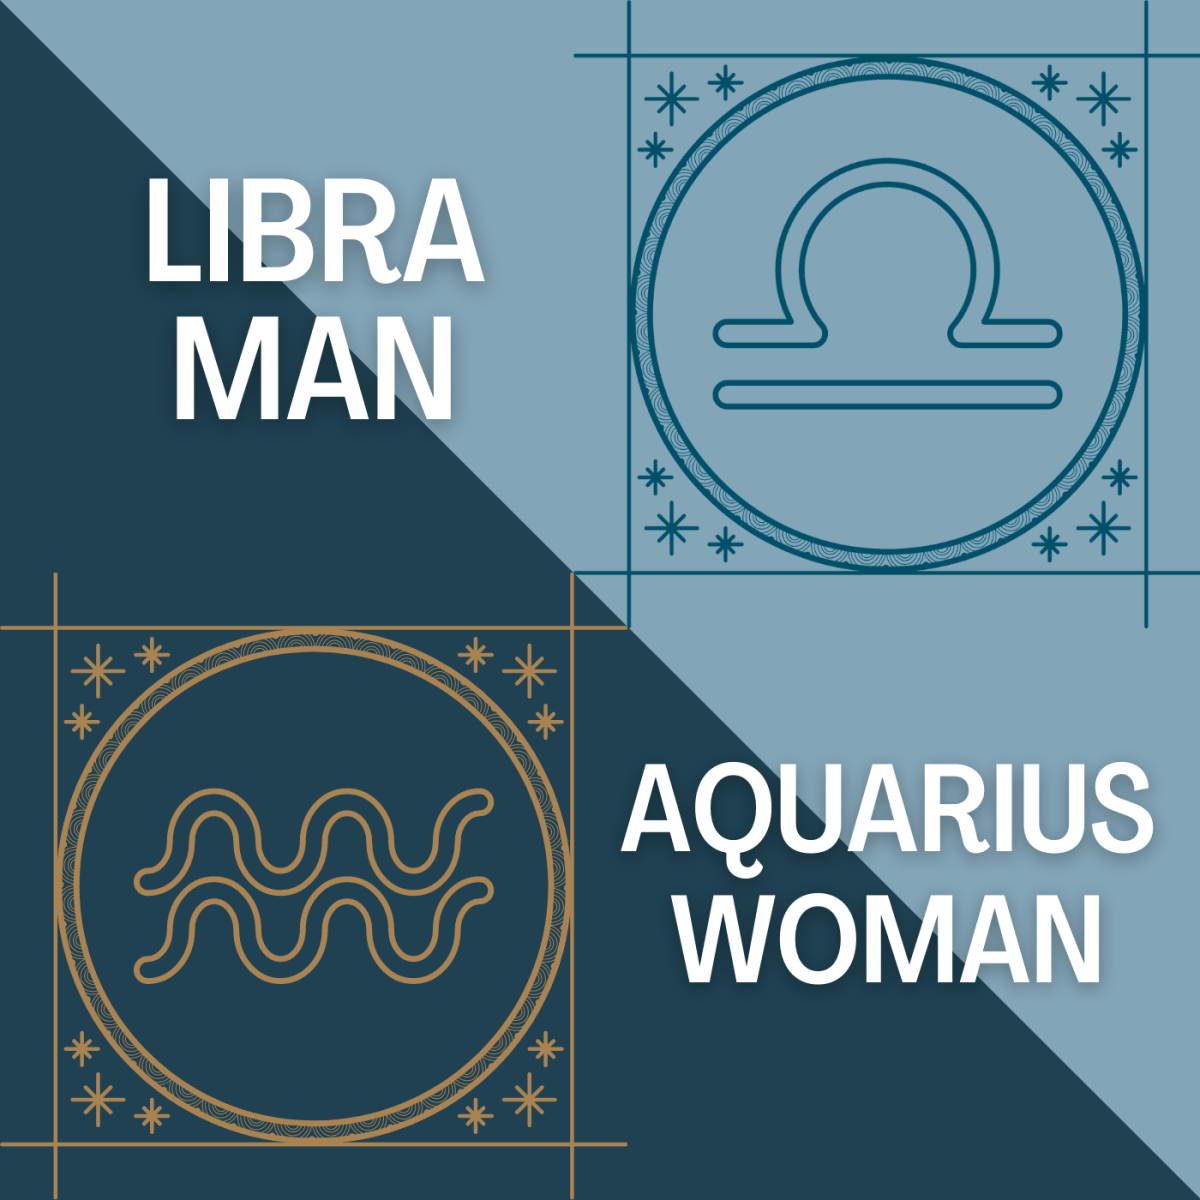 Are Aquarius and Libra compatible?